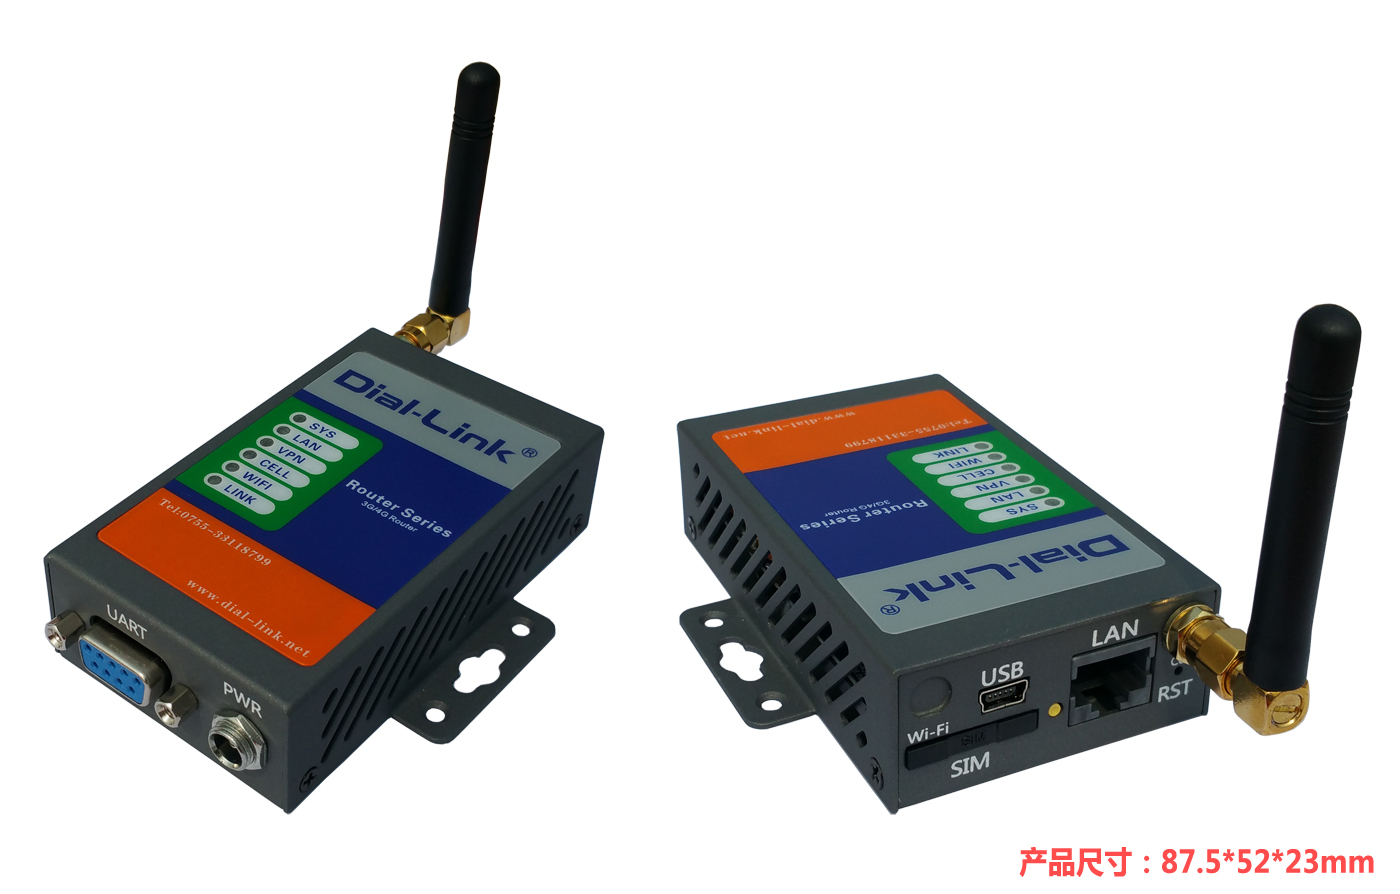 DLK-R870 工业全网路由器 工业全网通路由器 工业级4G路由器